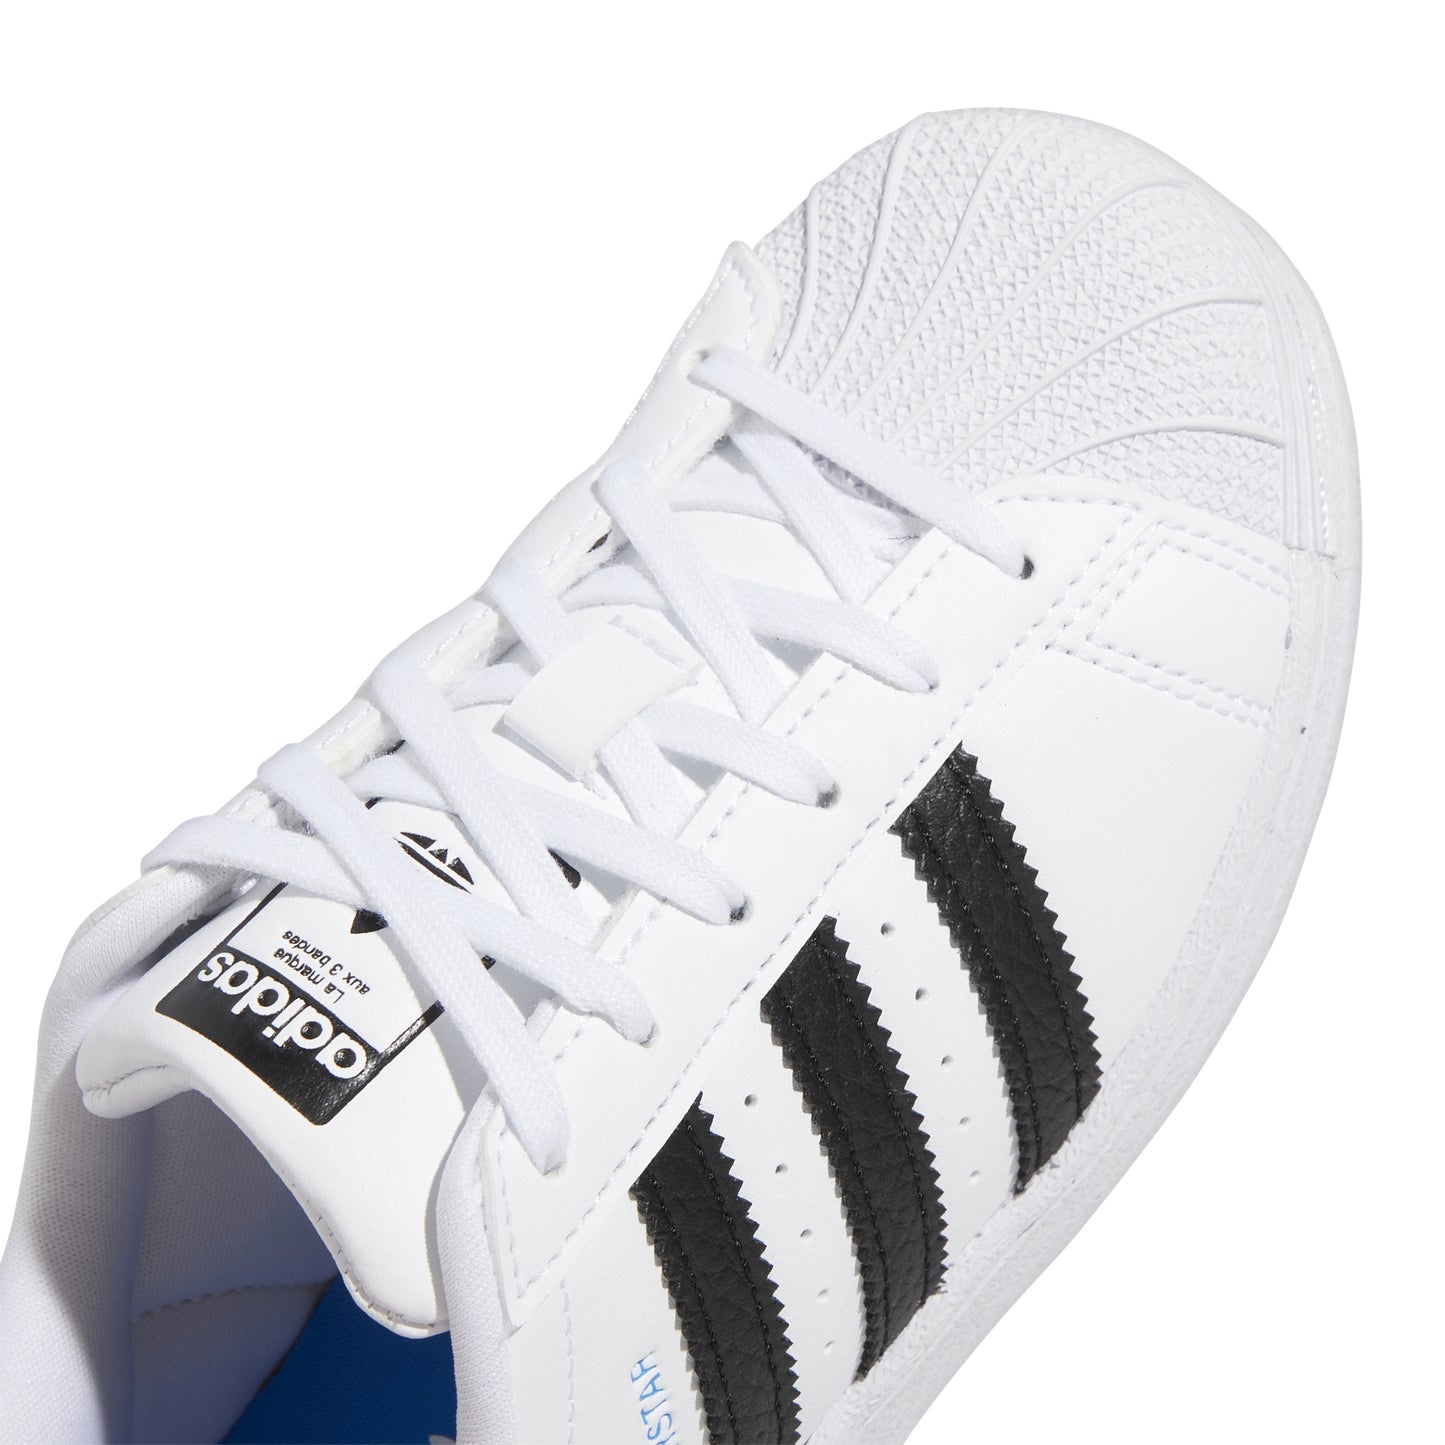 Adidas Superstar Brancas com Preto e Azul